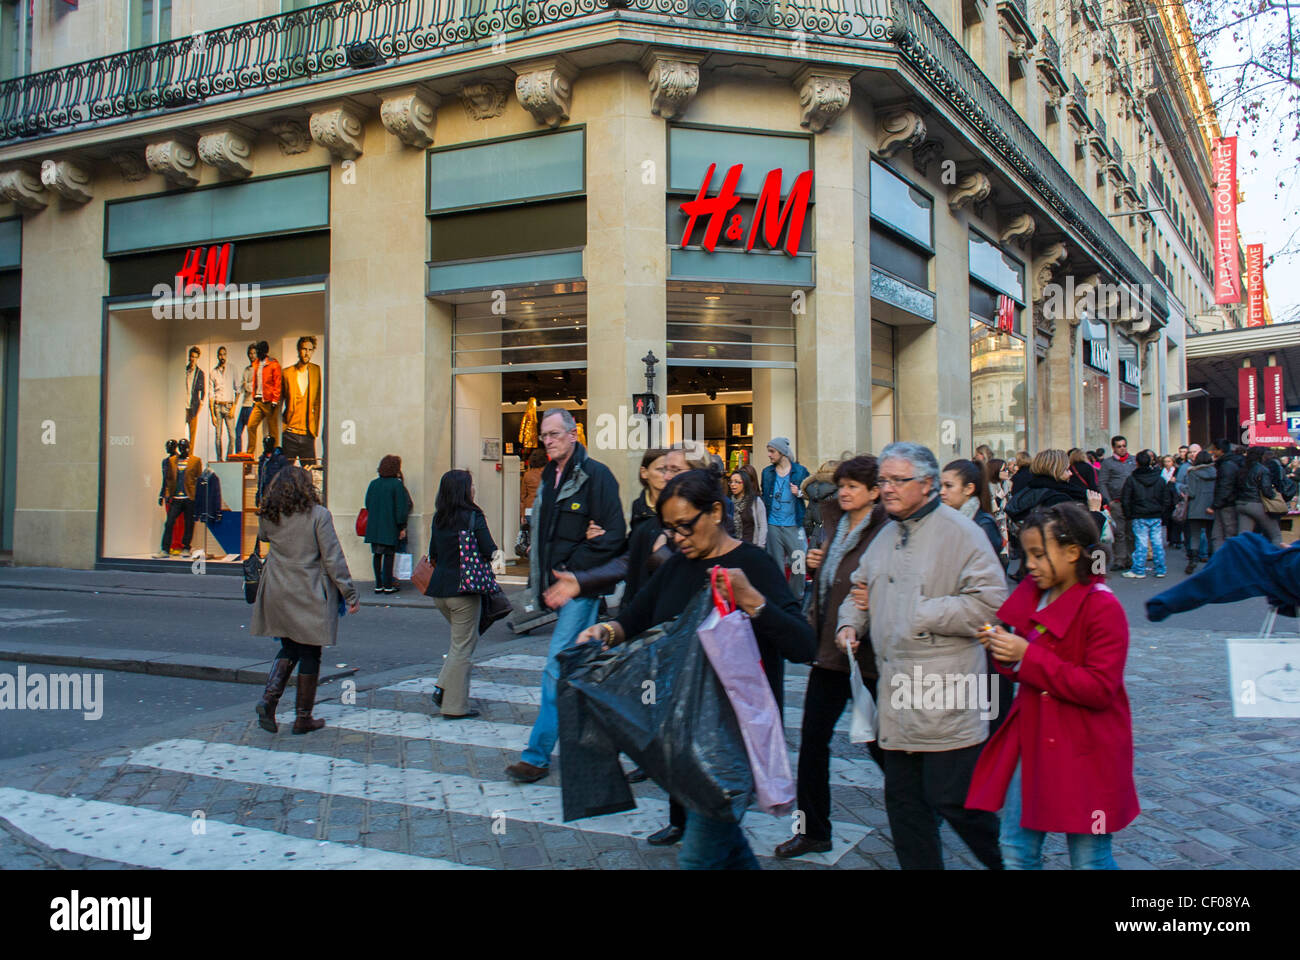 Formación María Energizar París, Francia, paseo público, compras de personas en H & M, tienda de ropa  y accesorios, en la calle, Haussmann Boulevard, tiendas de moda rápida,  centro de parís Fotografía de stock -